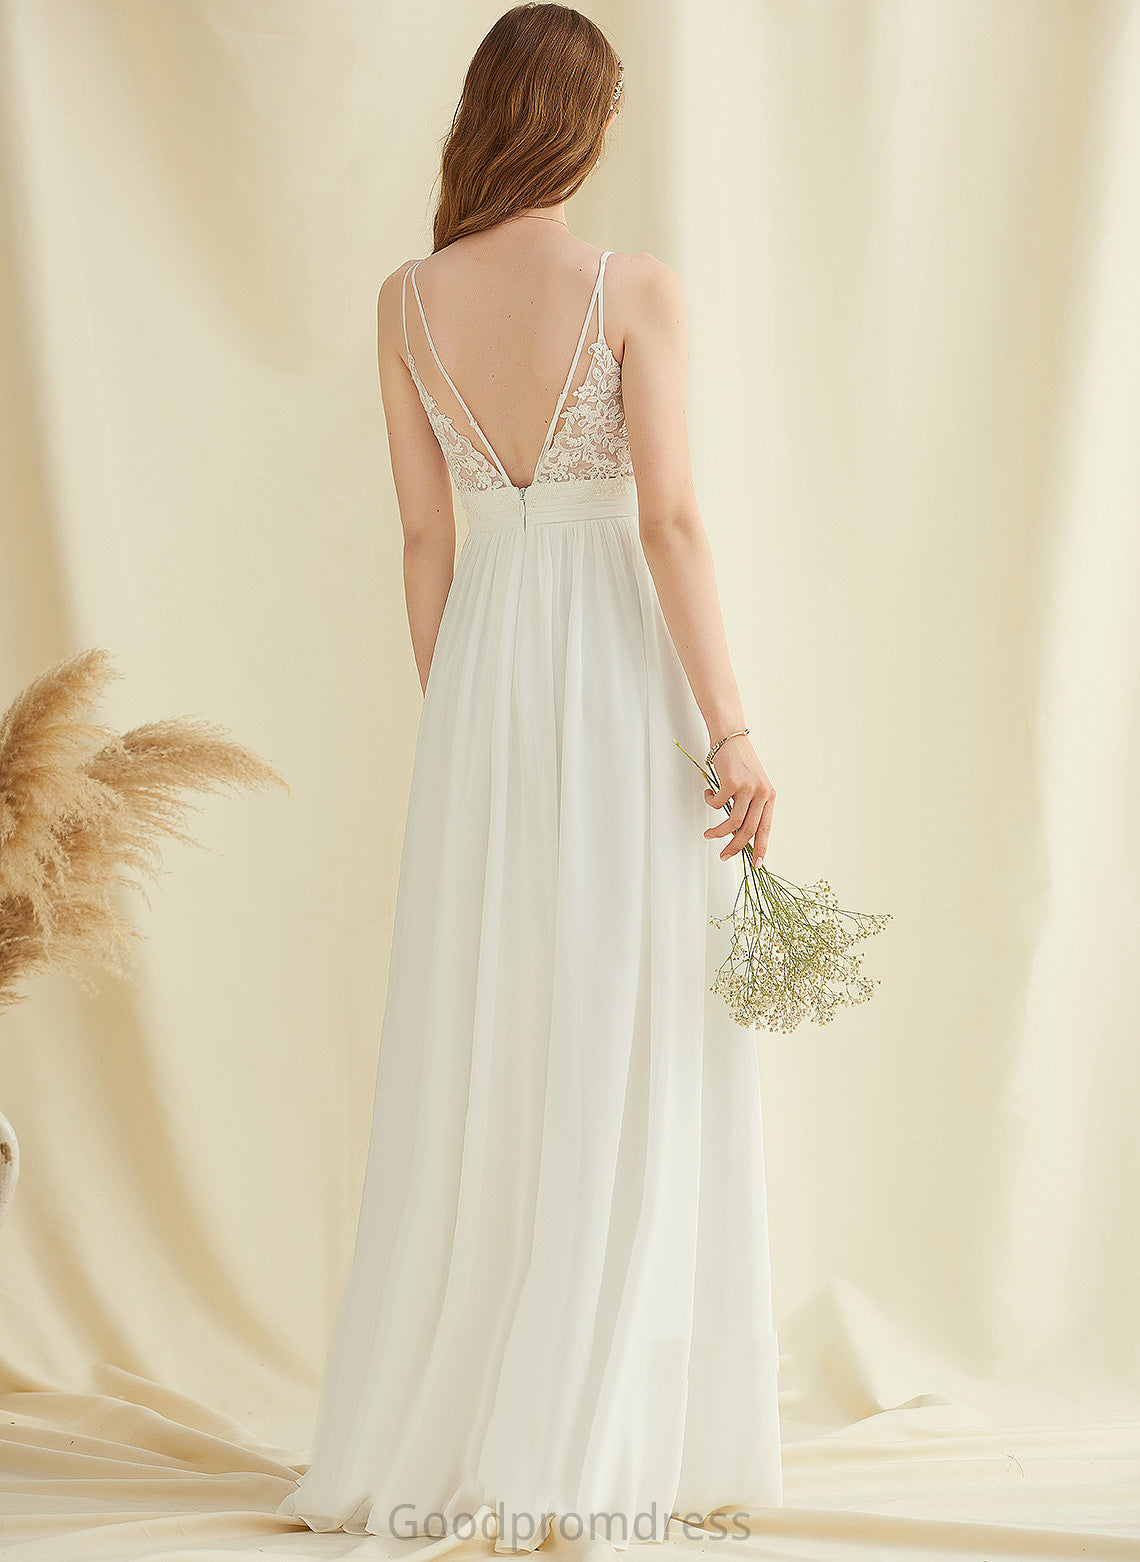 Chiffon Dress Wedding Wedding Dresses V-neck Shyann Floor-Length A-Line